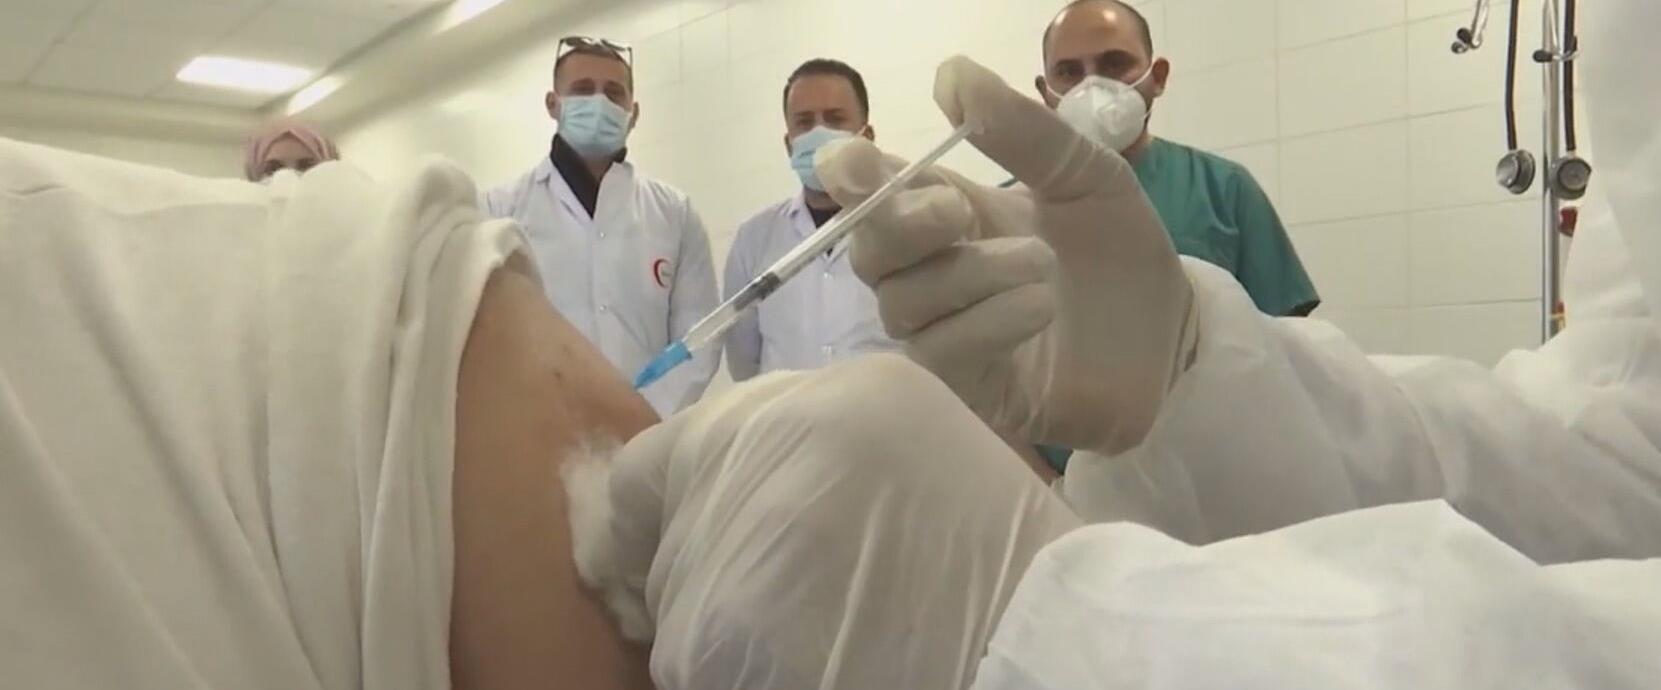 מבצע החיסונים ברשות הפלסטינית, ארכיון